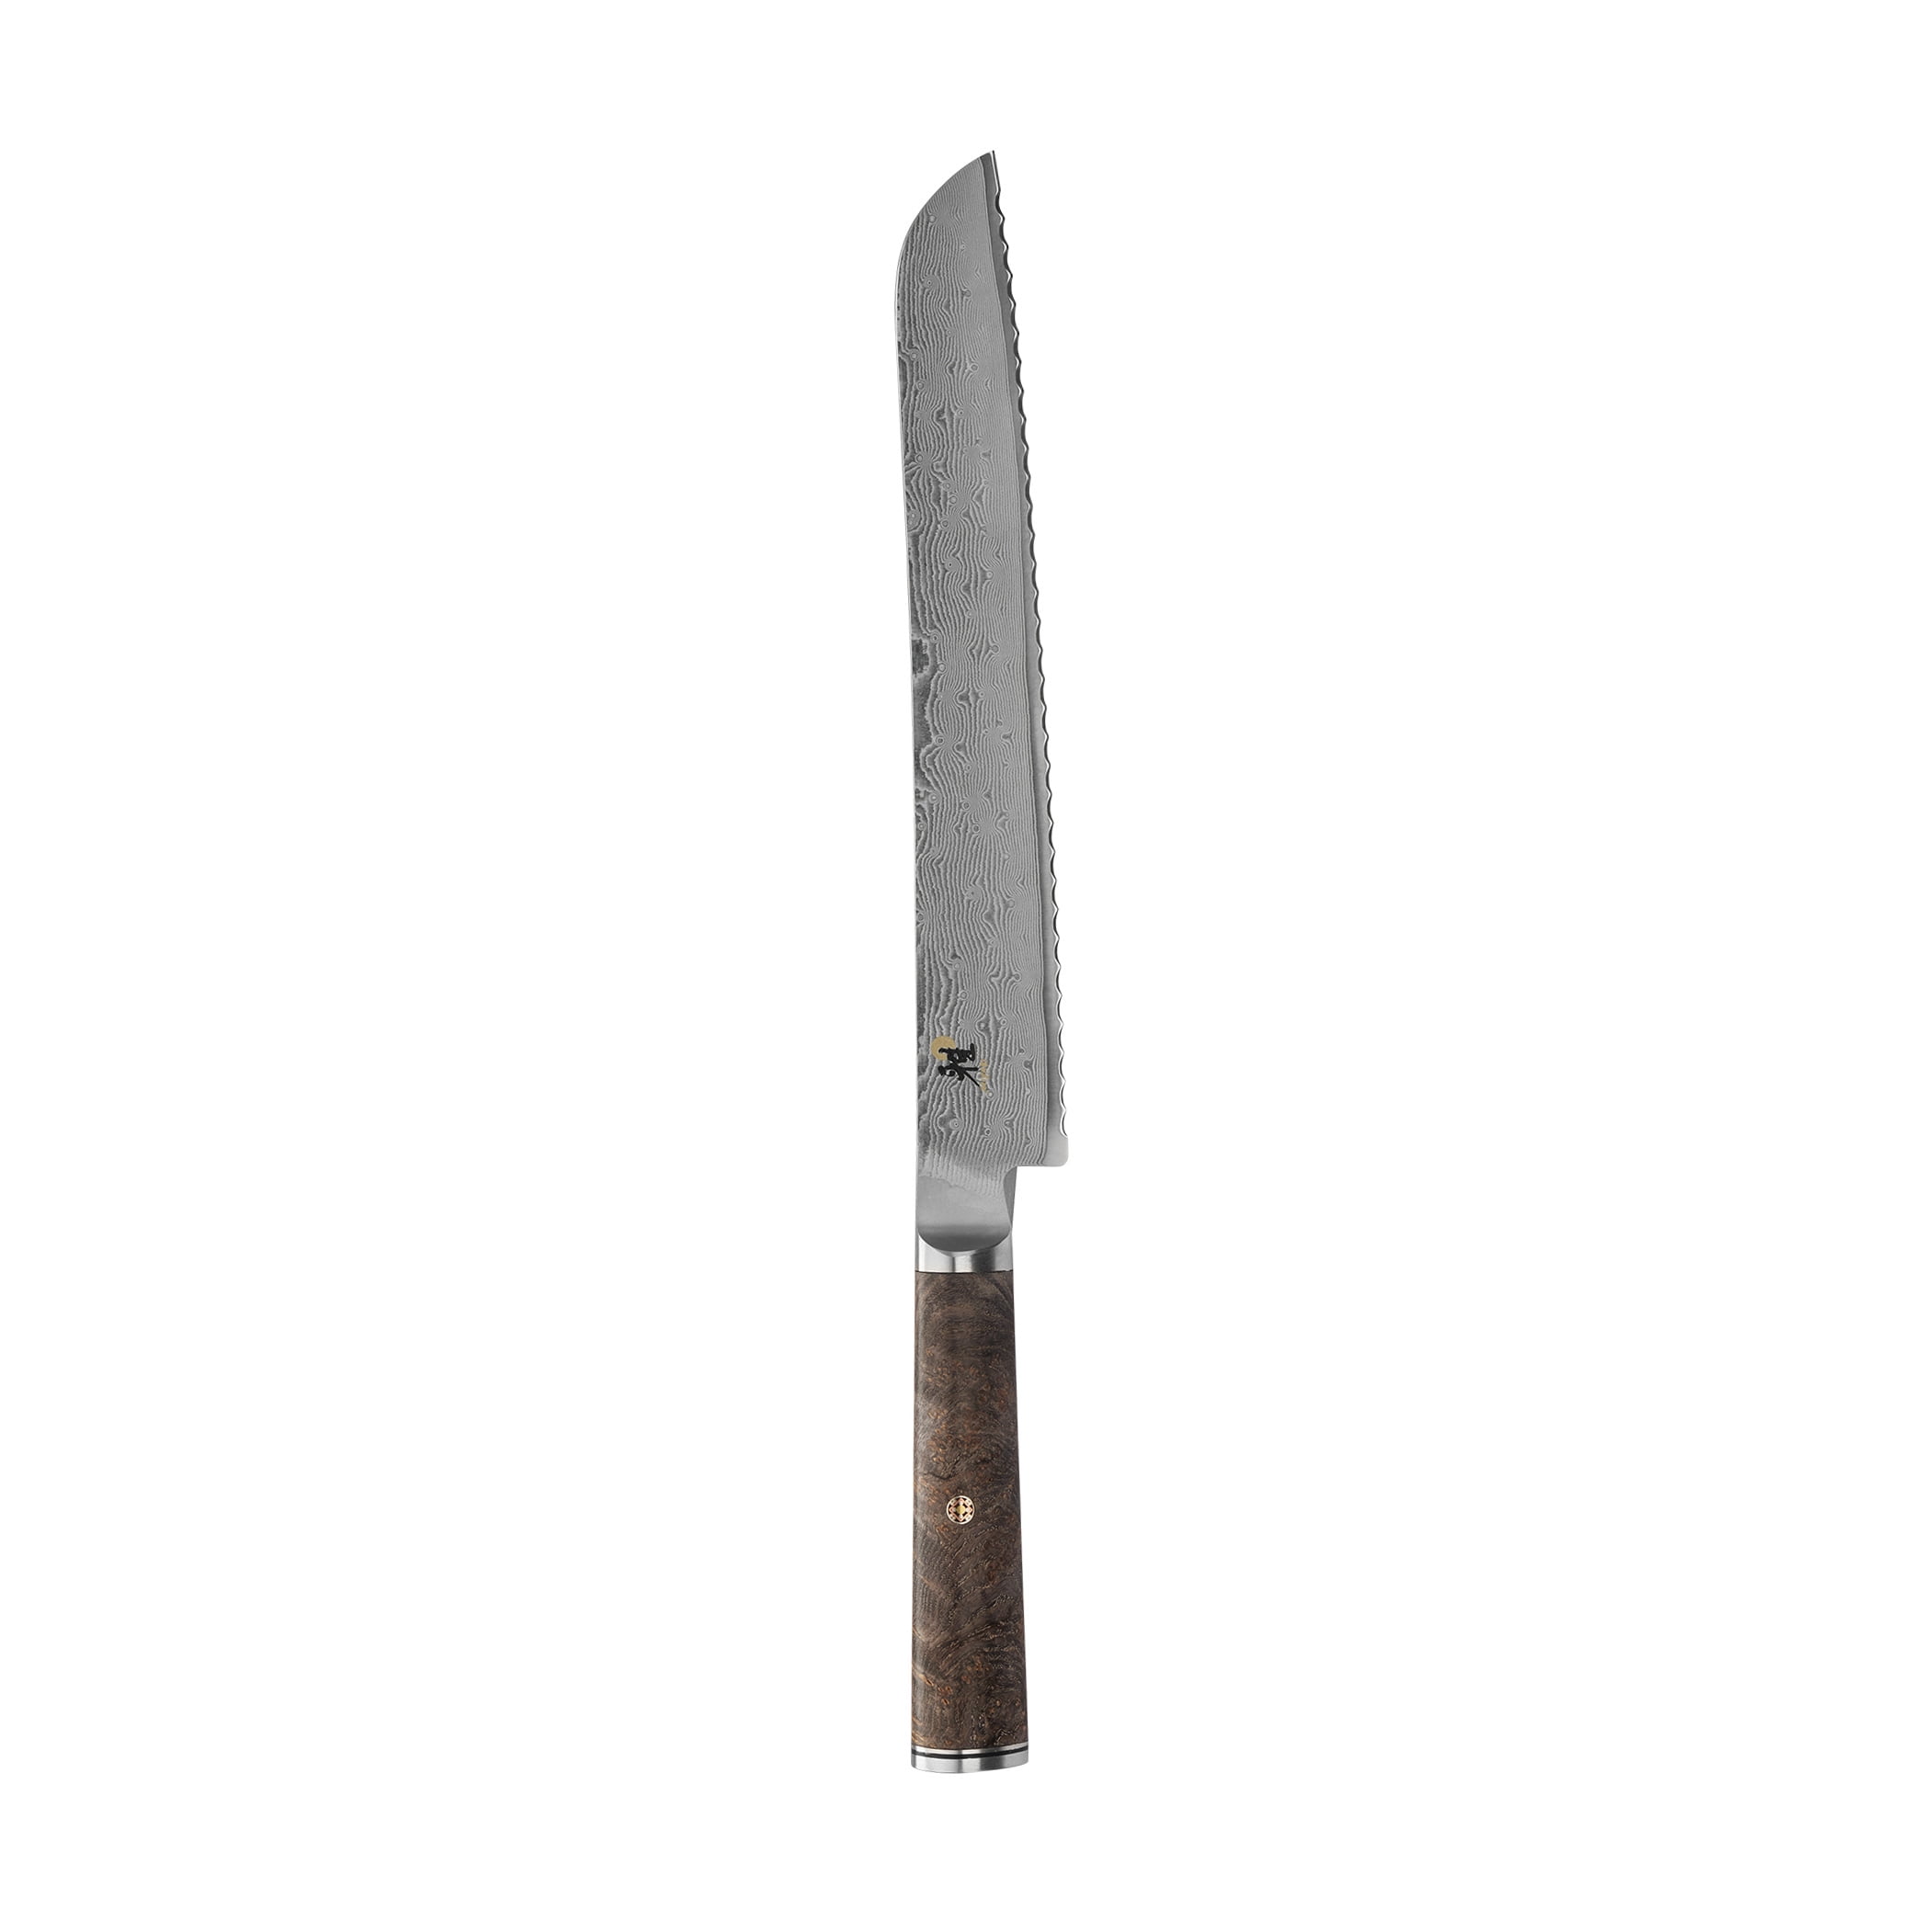 Miyabi Black Magnetic Easel Knife Block, Set of 8